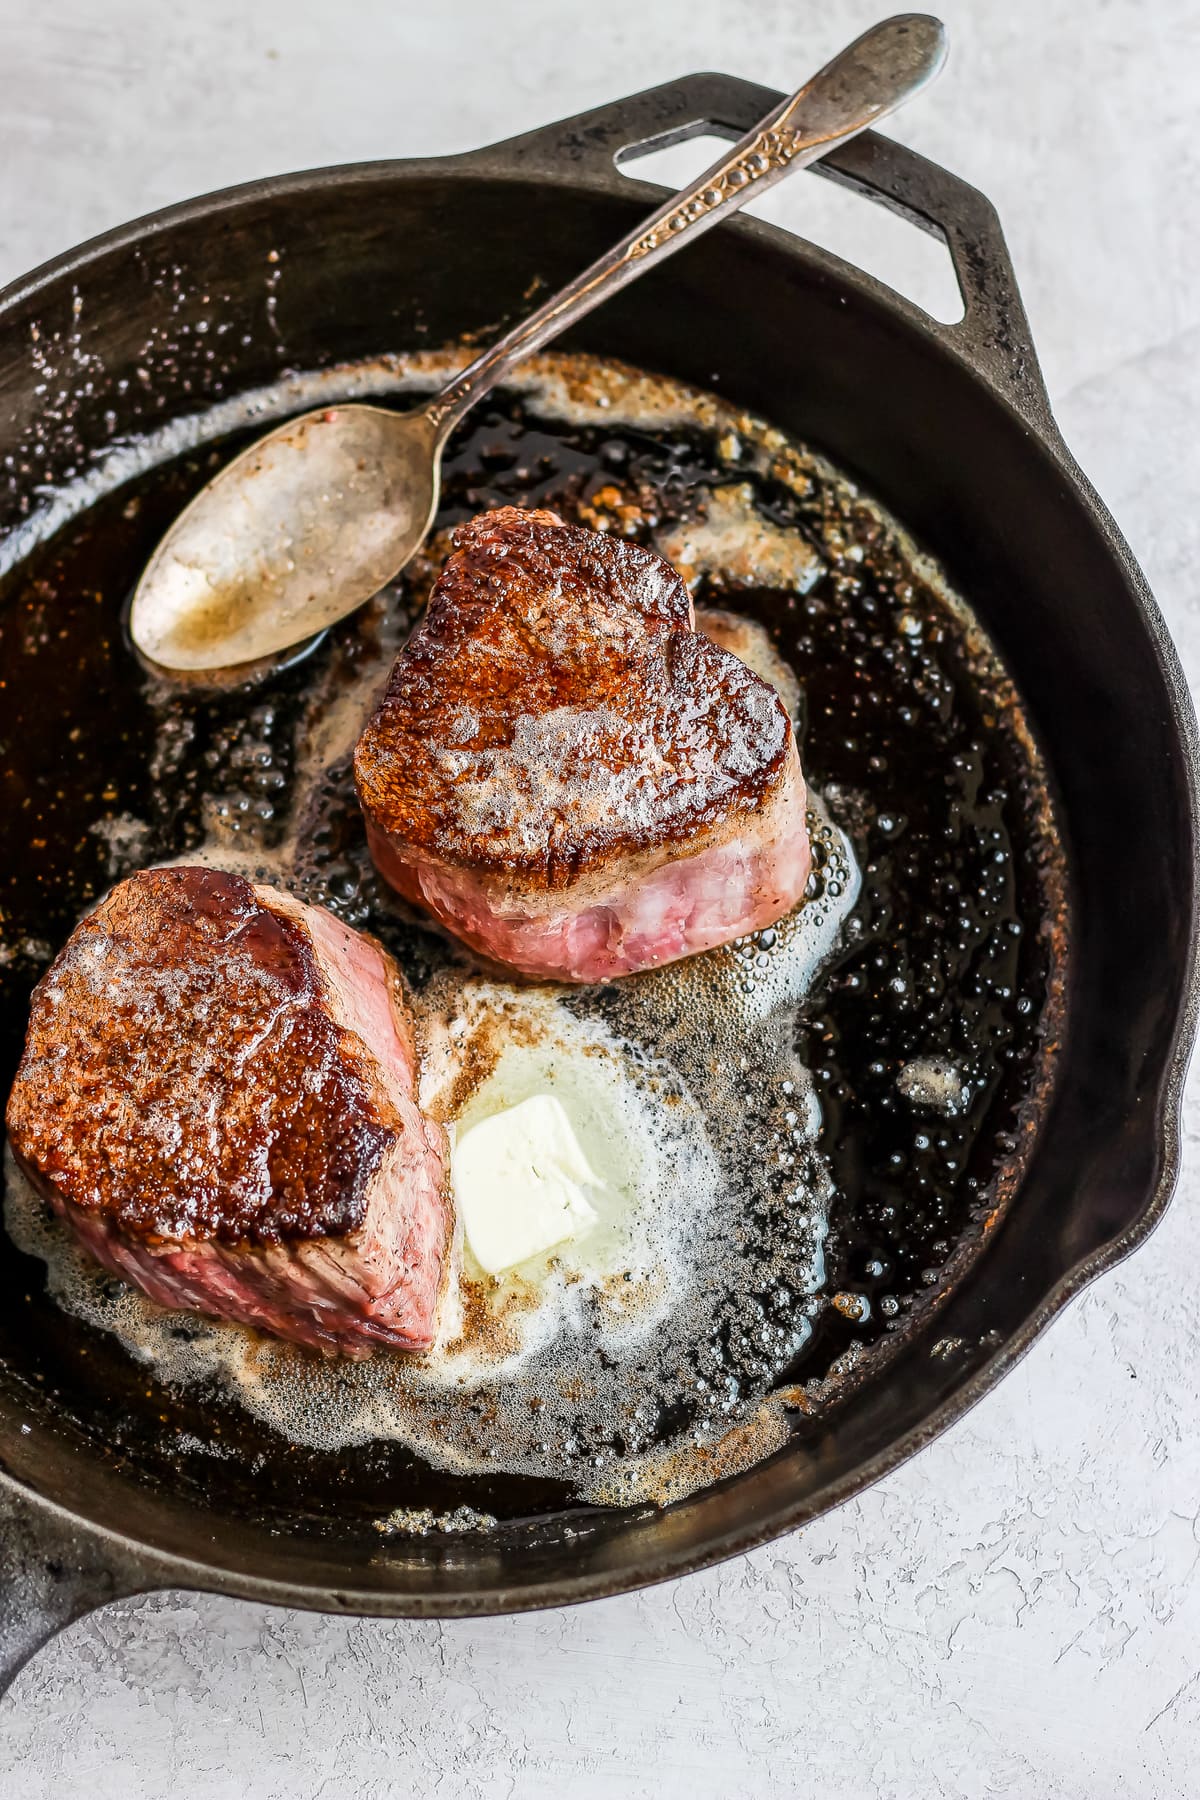 Restaurant Steak Recipe With Cilantro Steak Butter Video